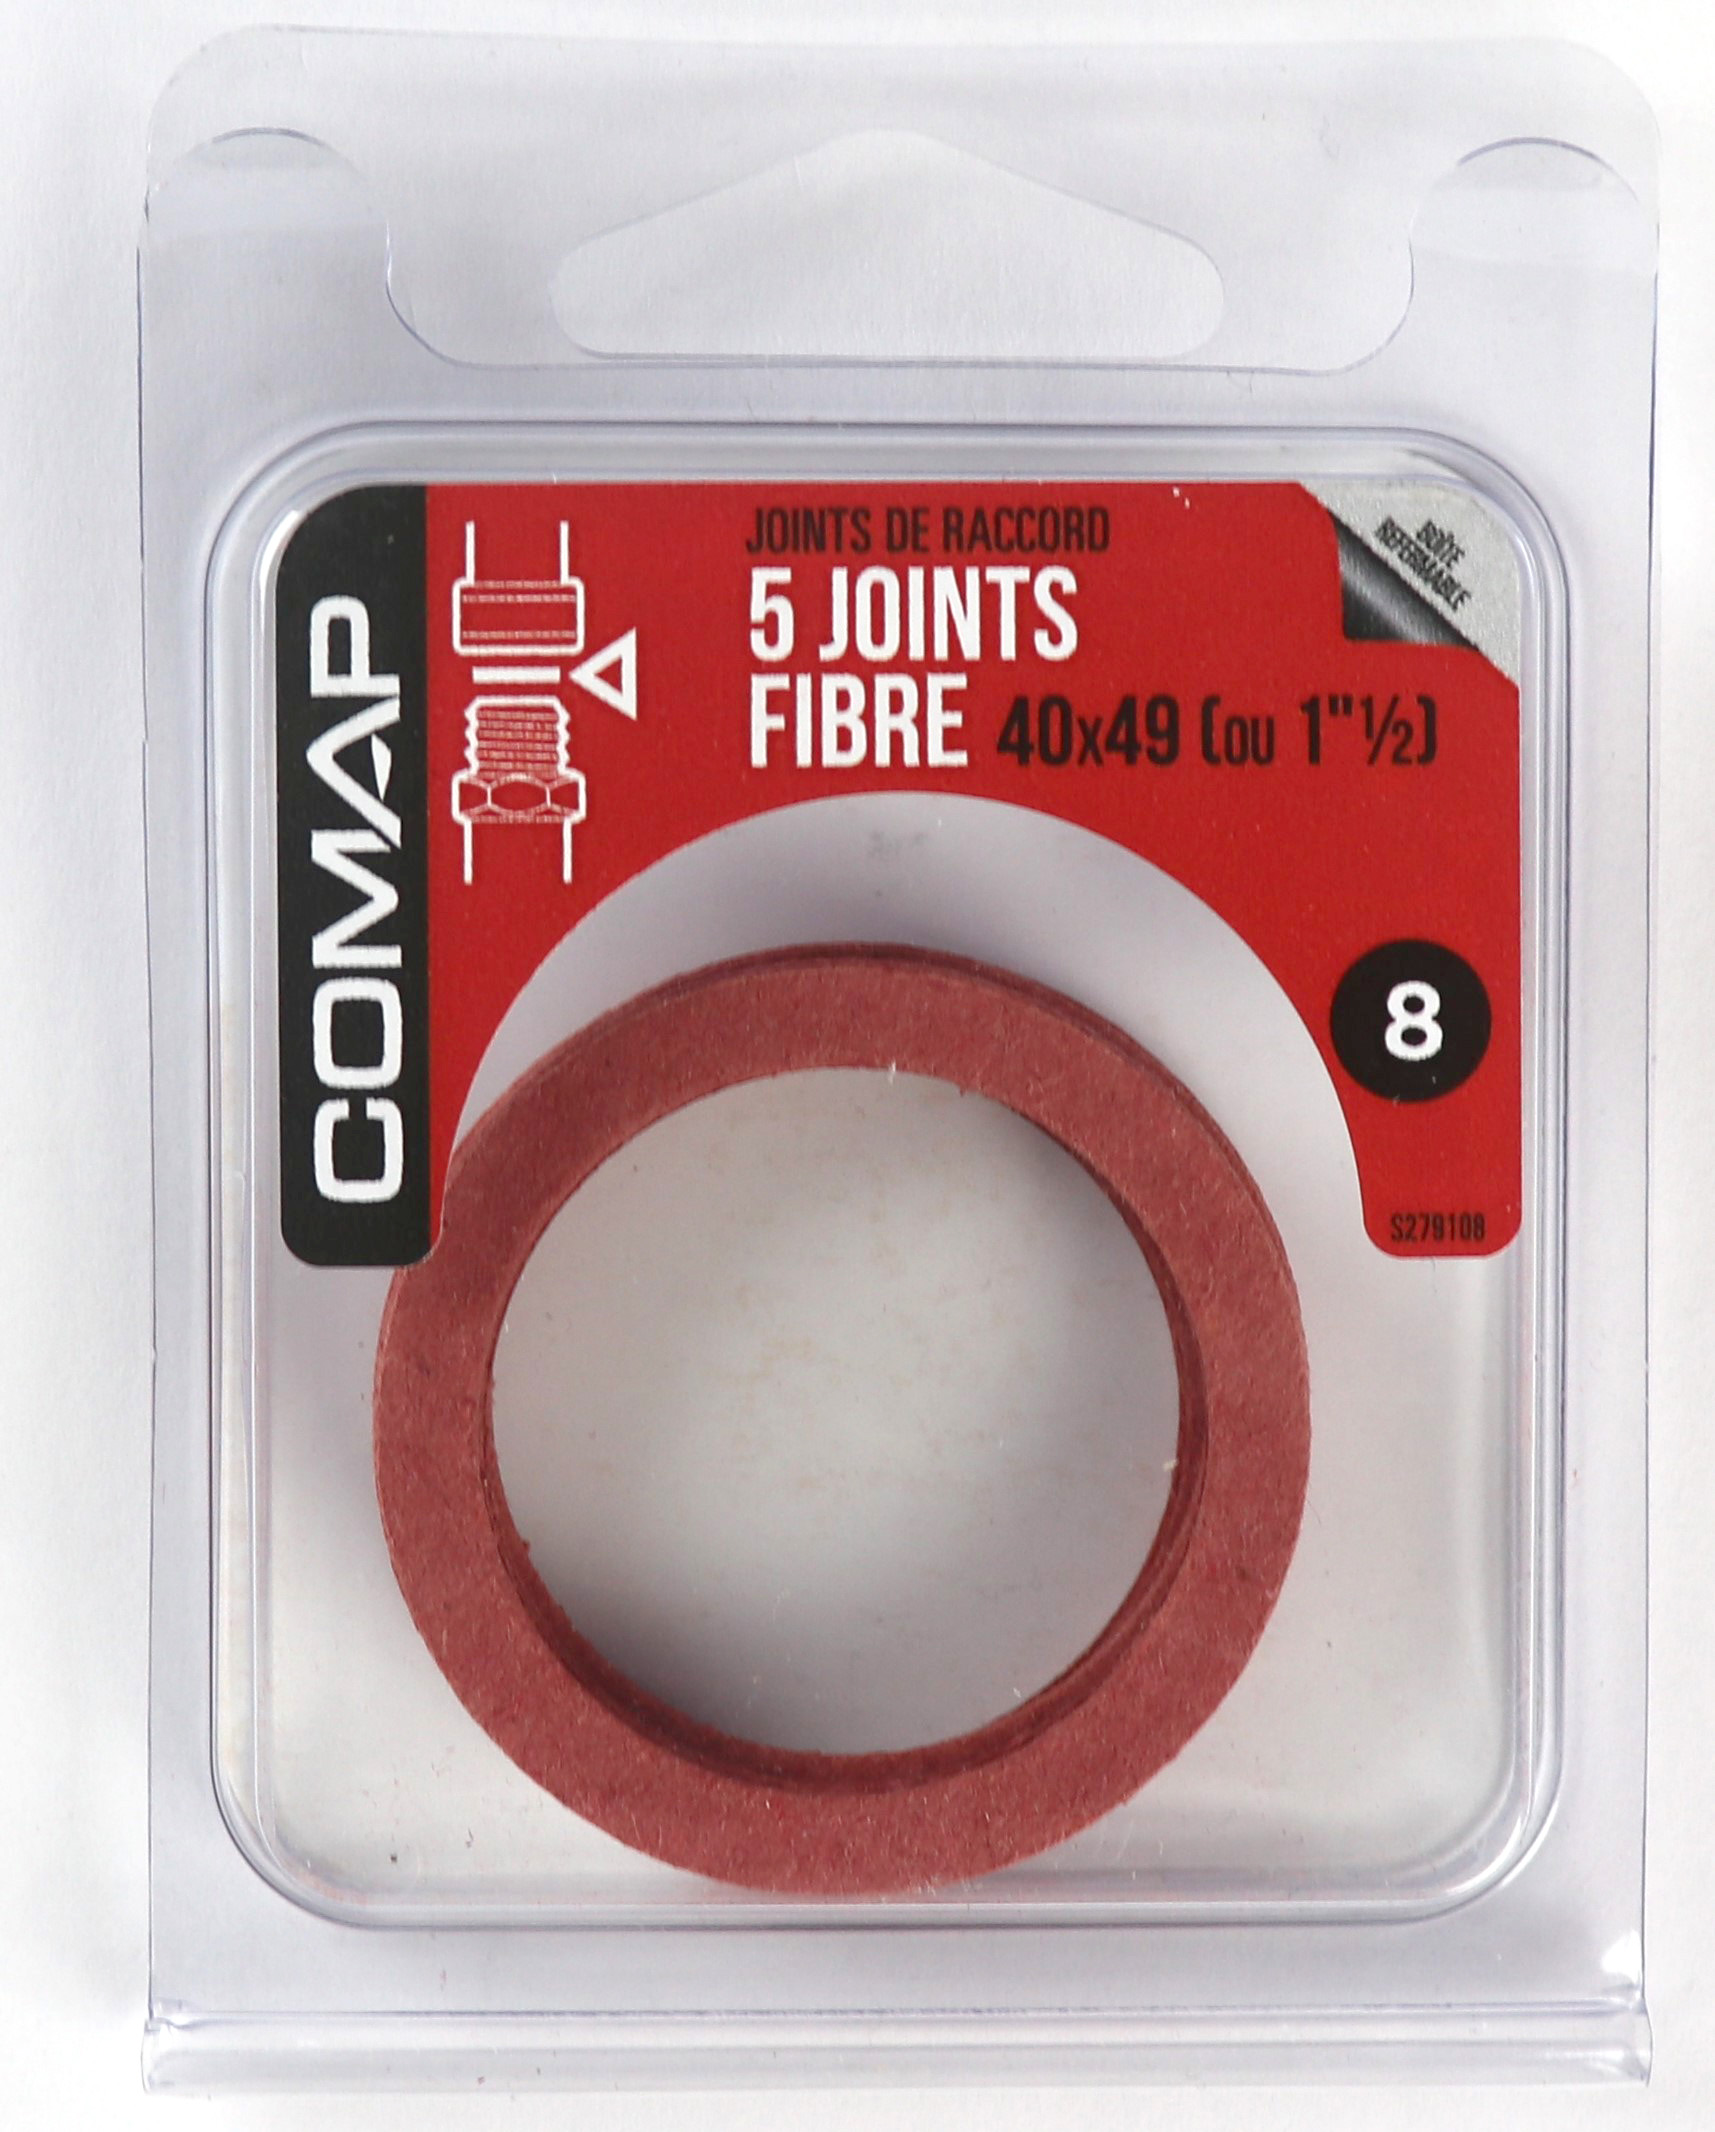 5 Joints fibre 40x49 - COMAP